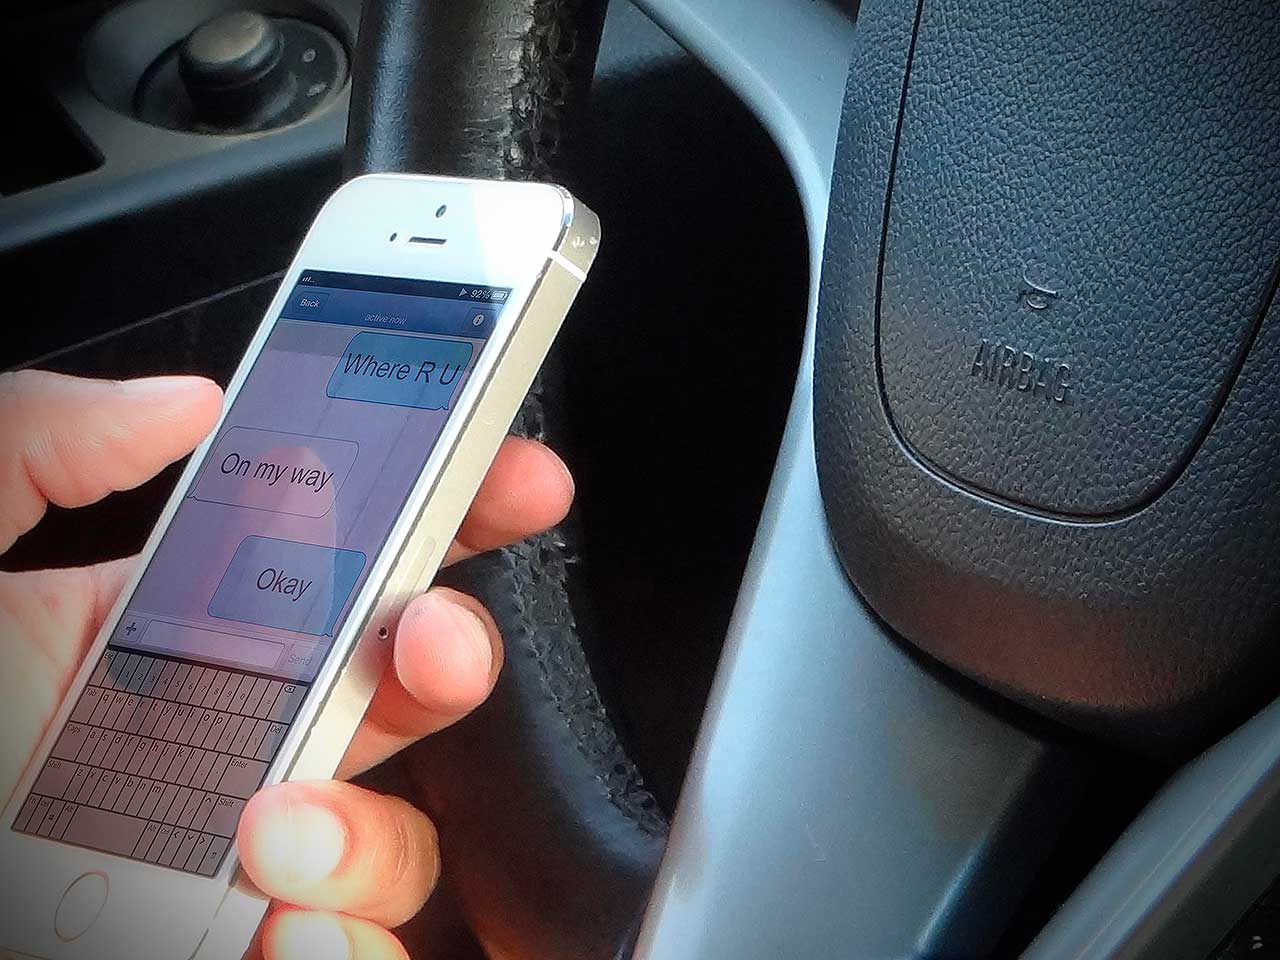 Verificar e enviar mensagens de texto ao volante  um prtica muito perigosa